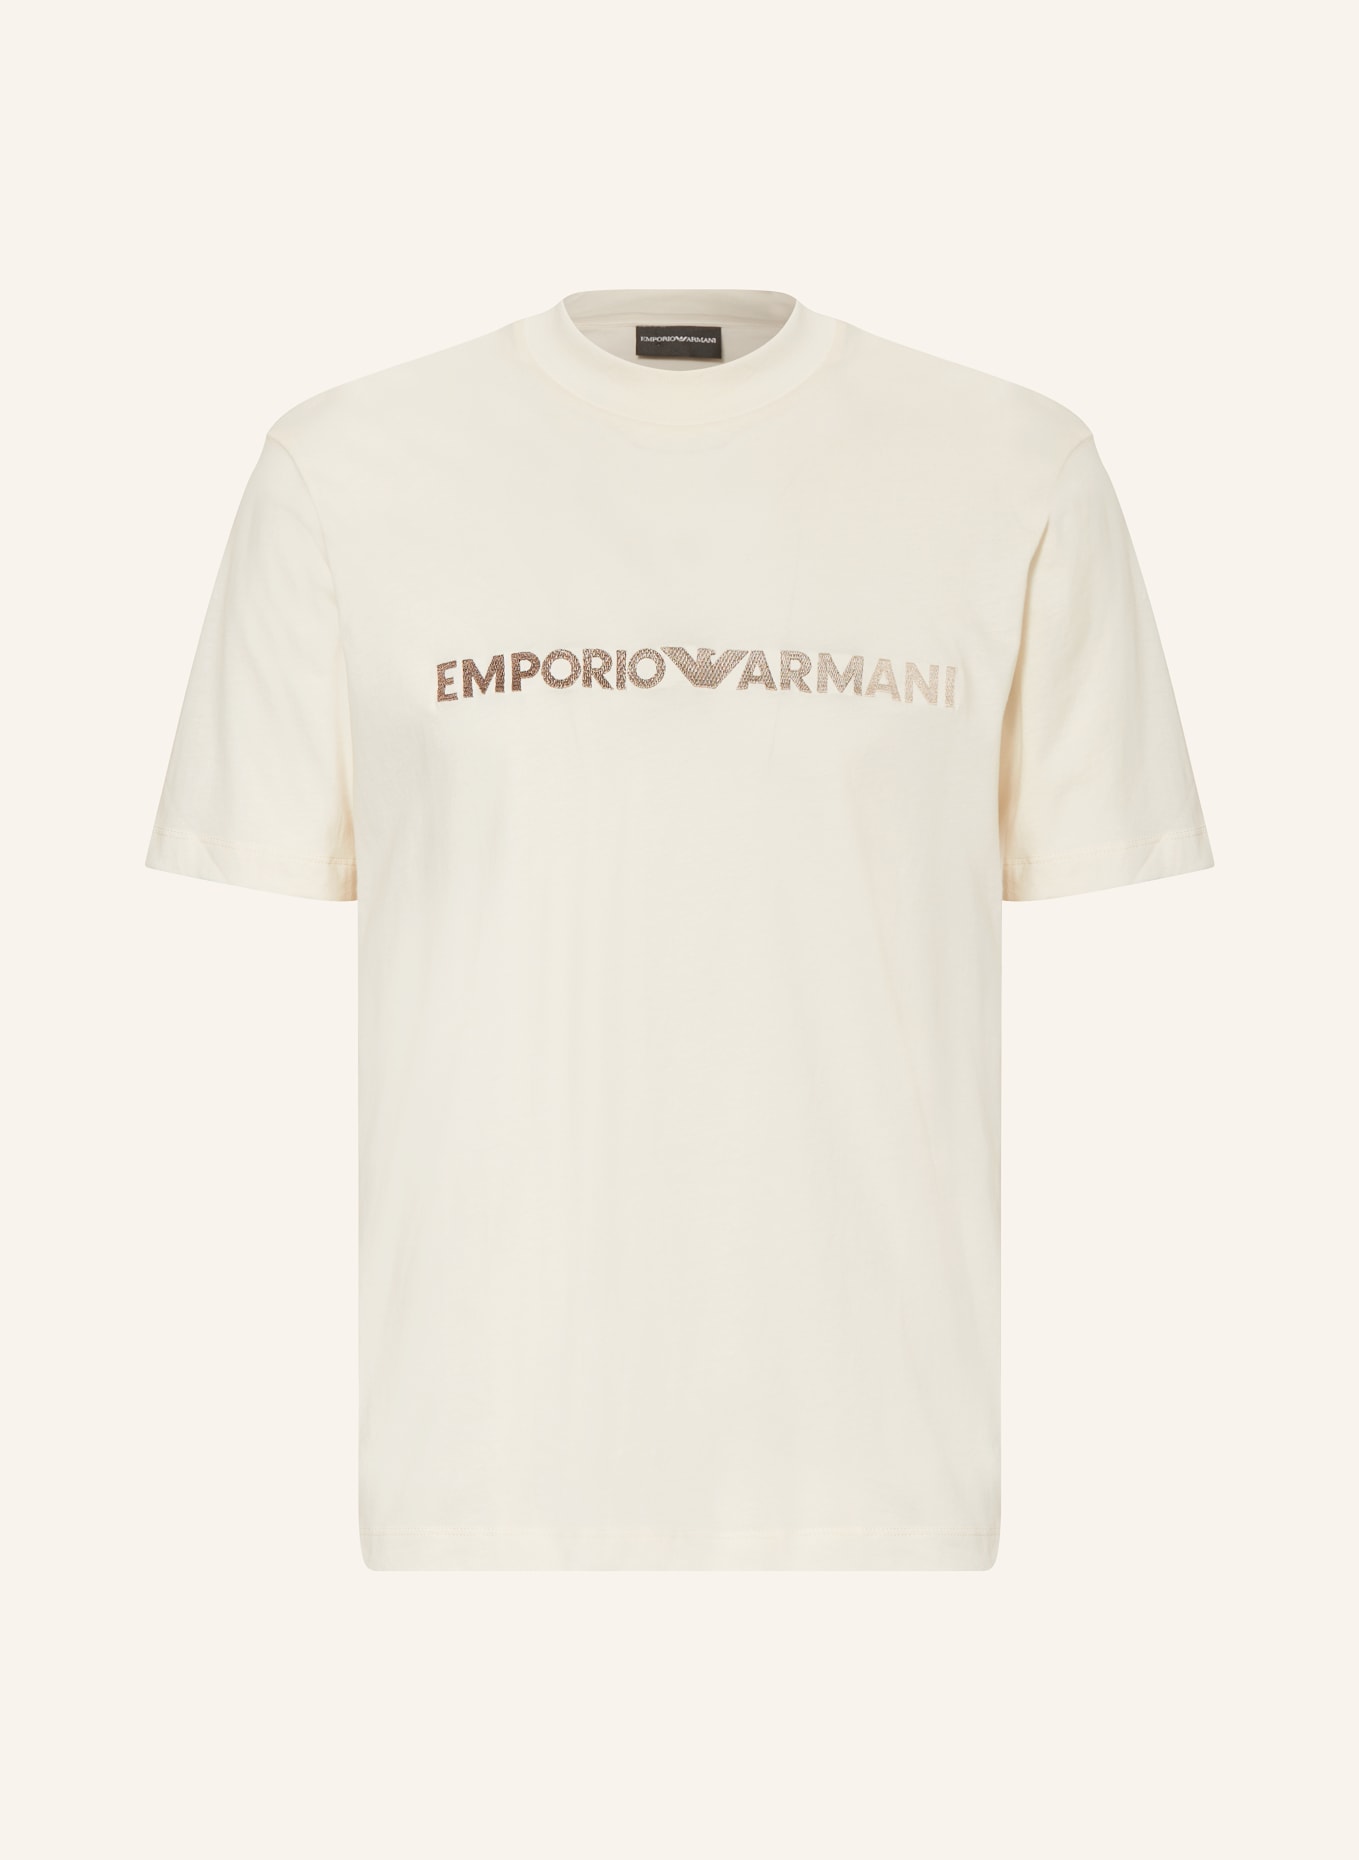 EMPORIO ARMANI T-Shirt, Farbe: ECRU (Bild 1)